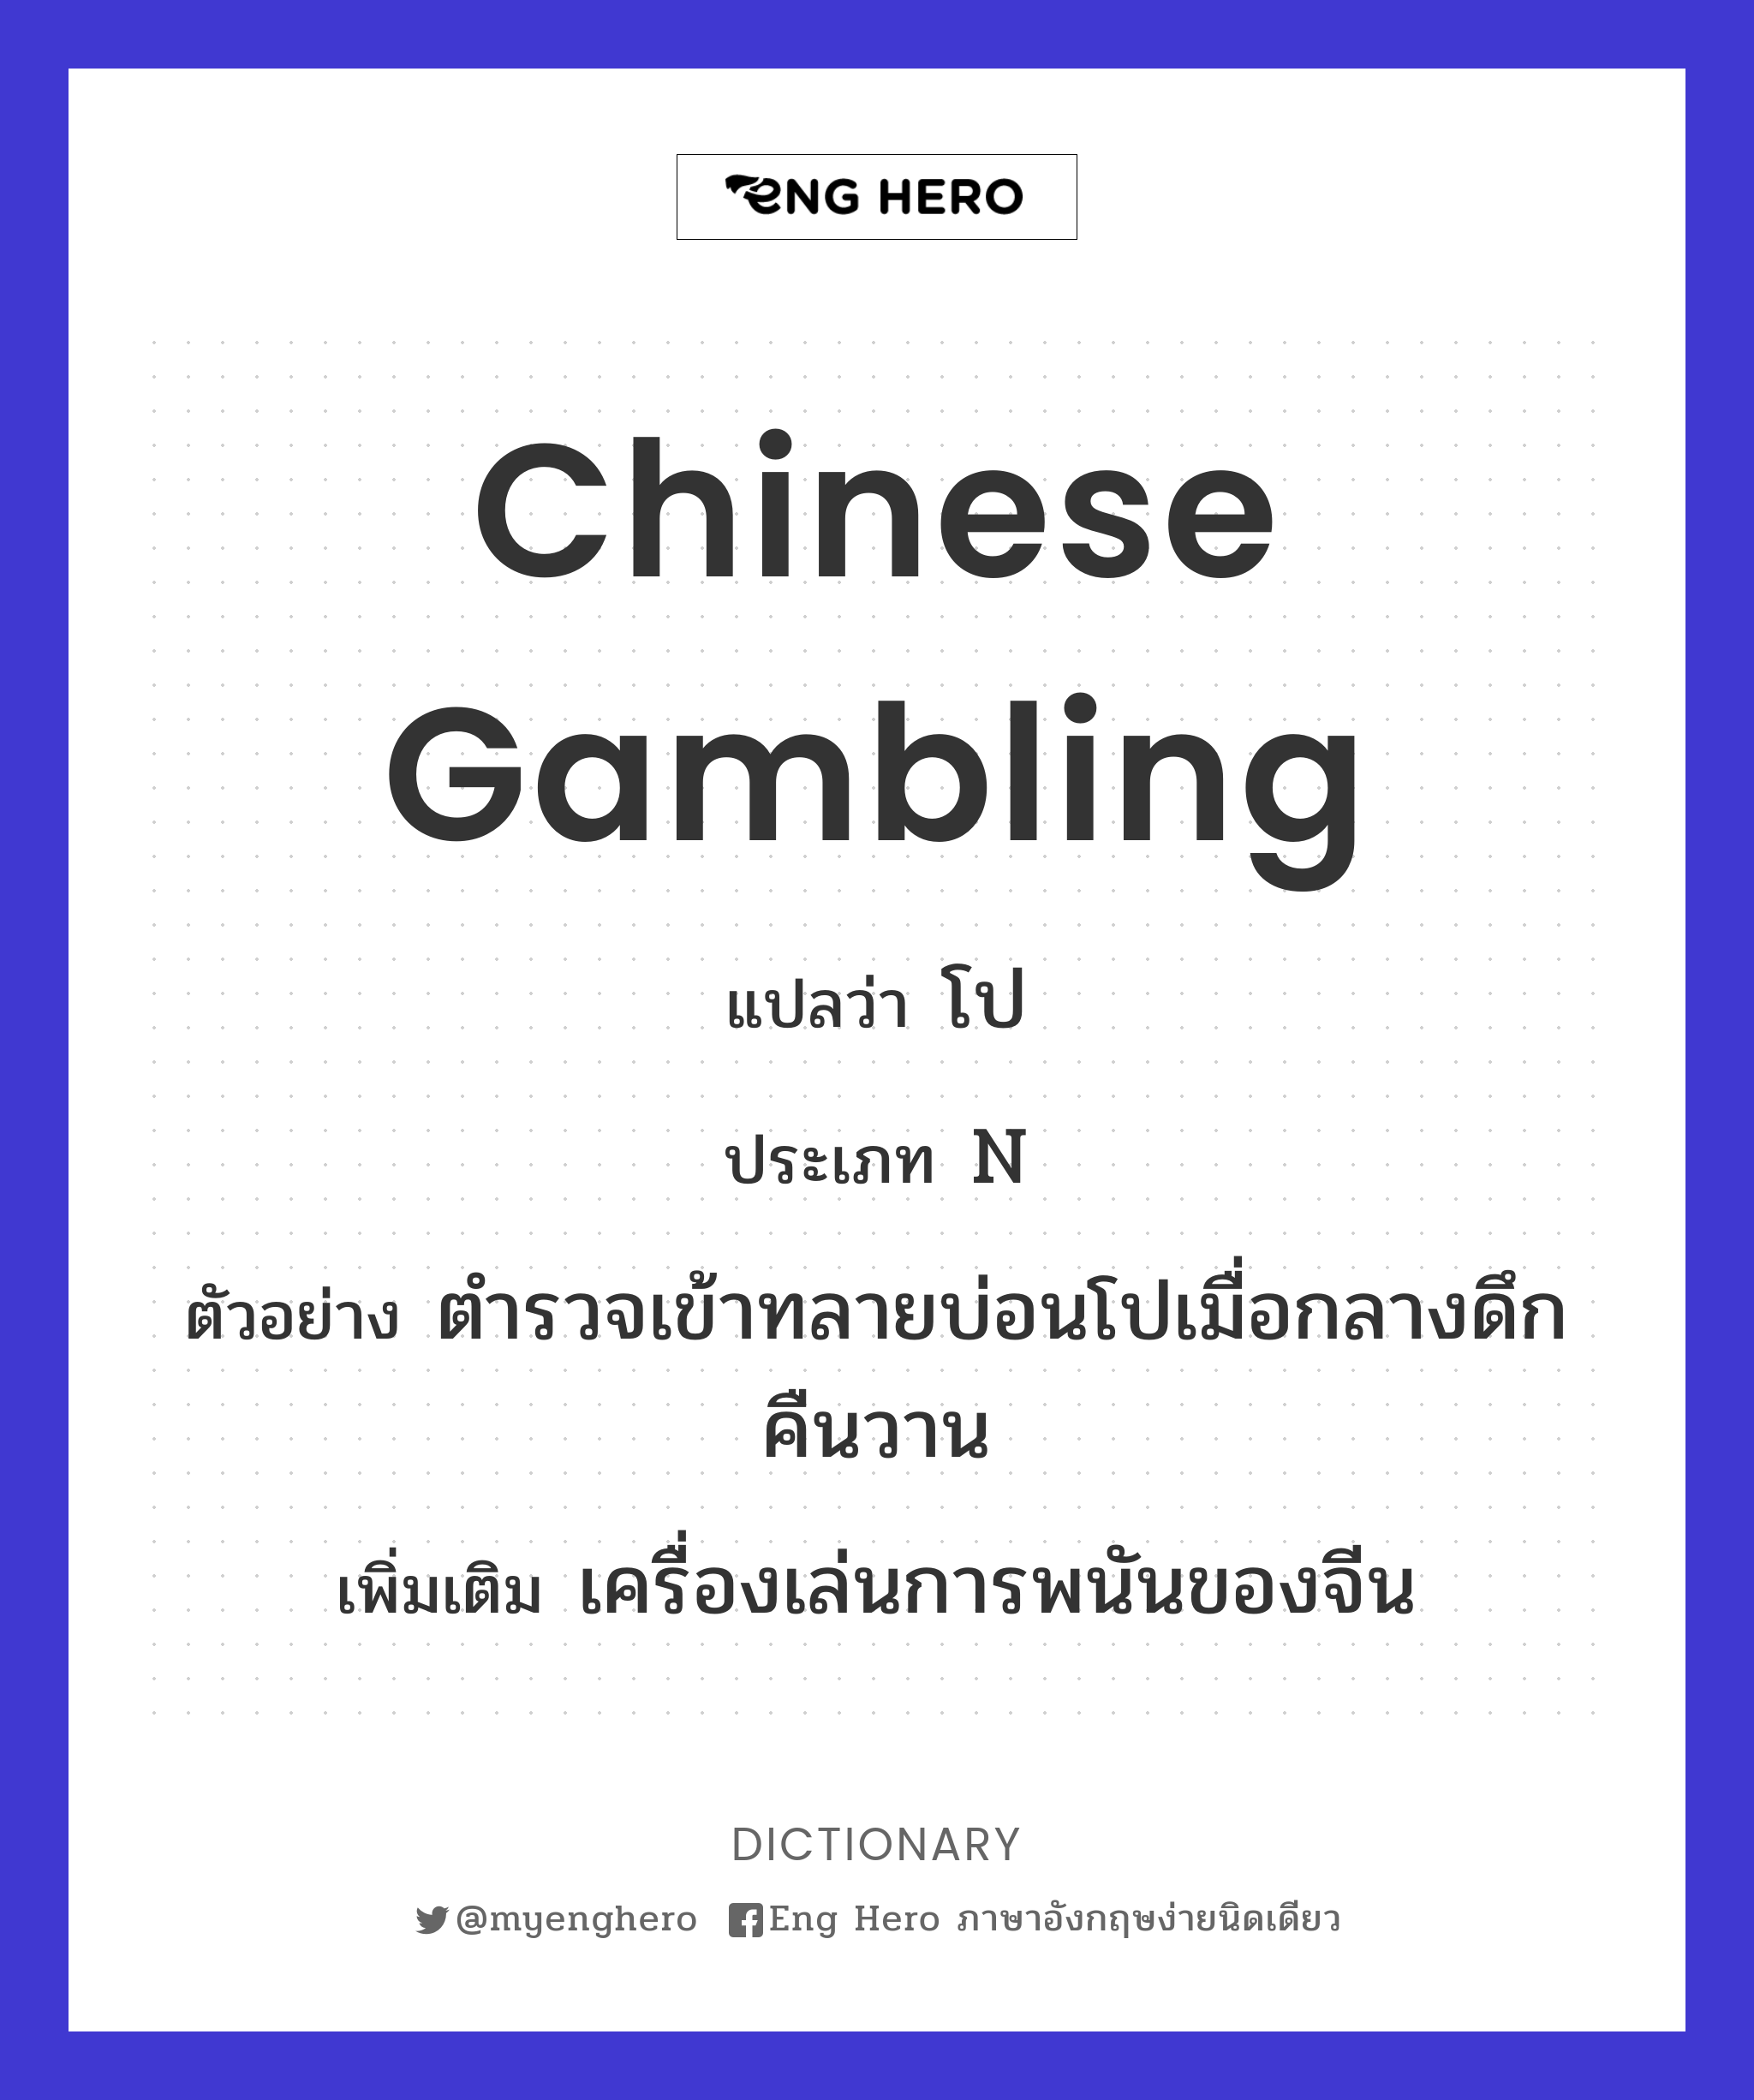 Chinese gambling